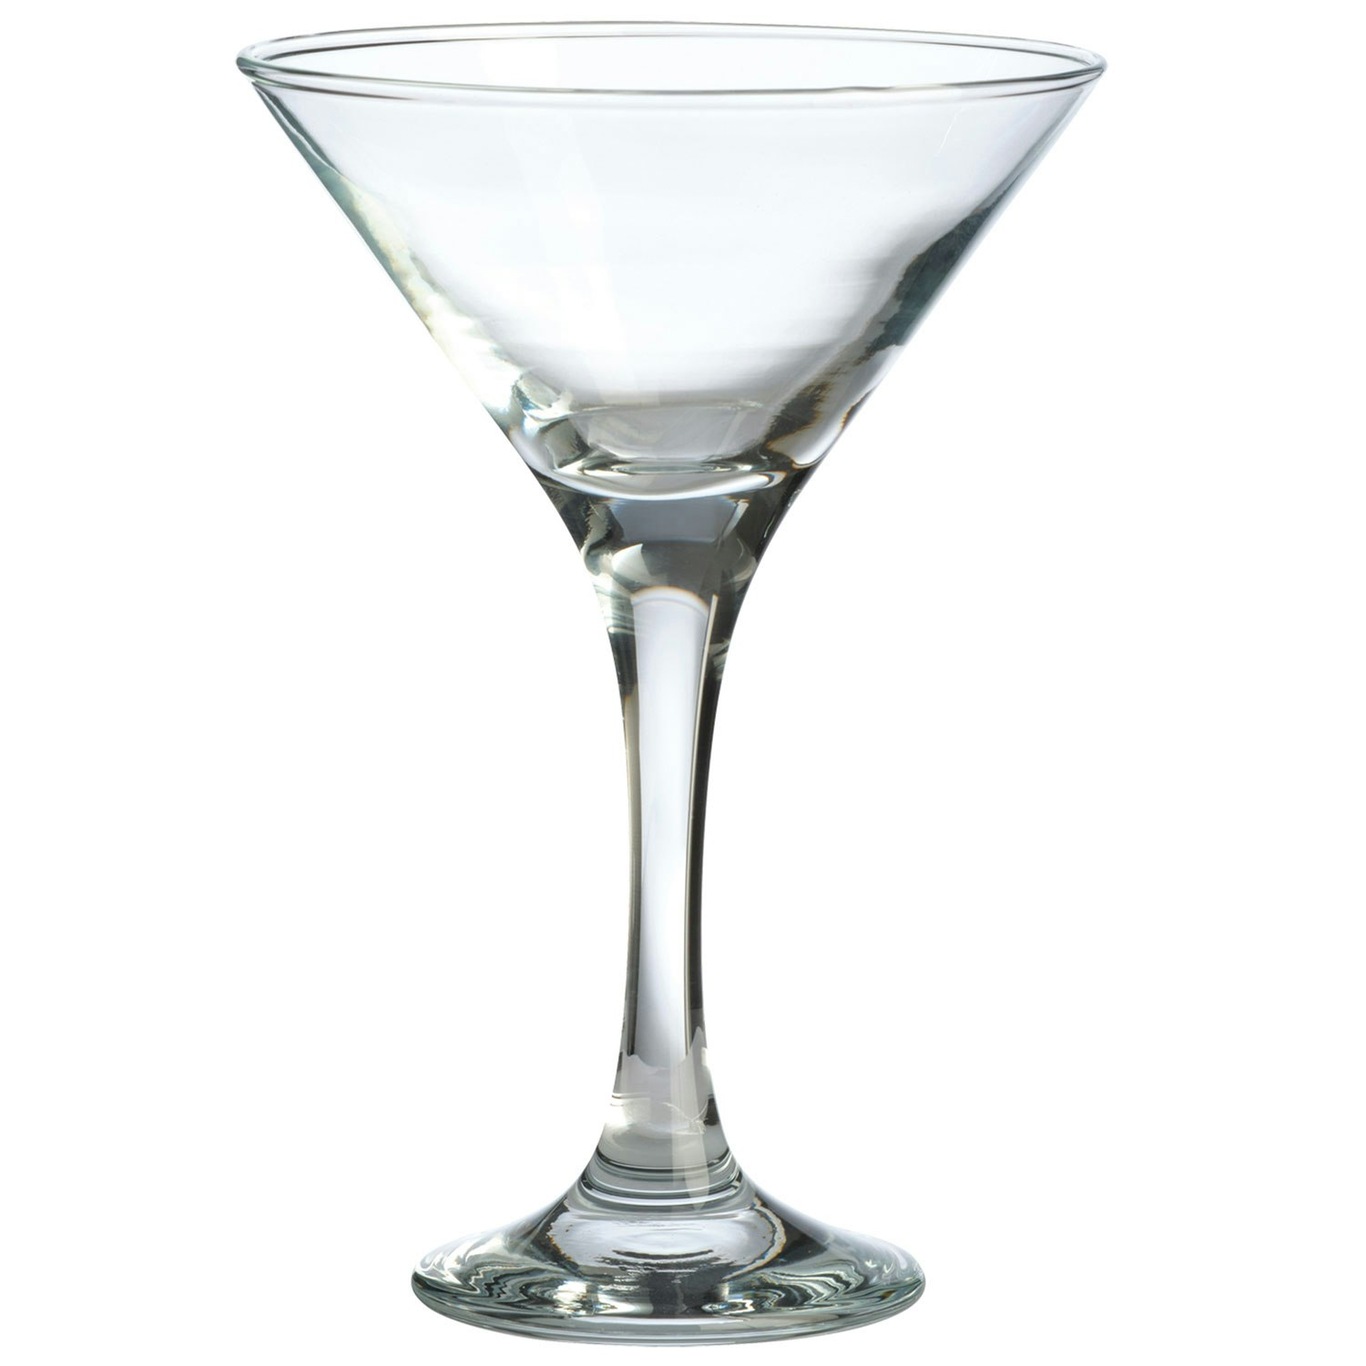 https://royaldesign.com/image/18/aida-cafe-martini-cocktailglass-175cl-0?w=800&quality=80